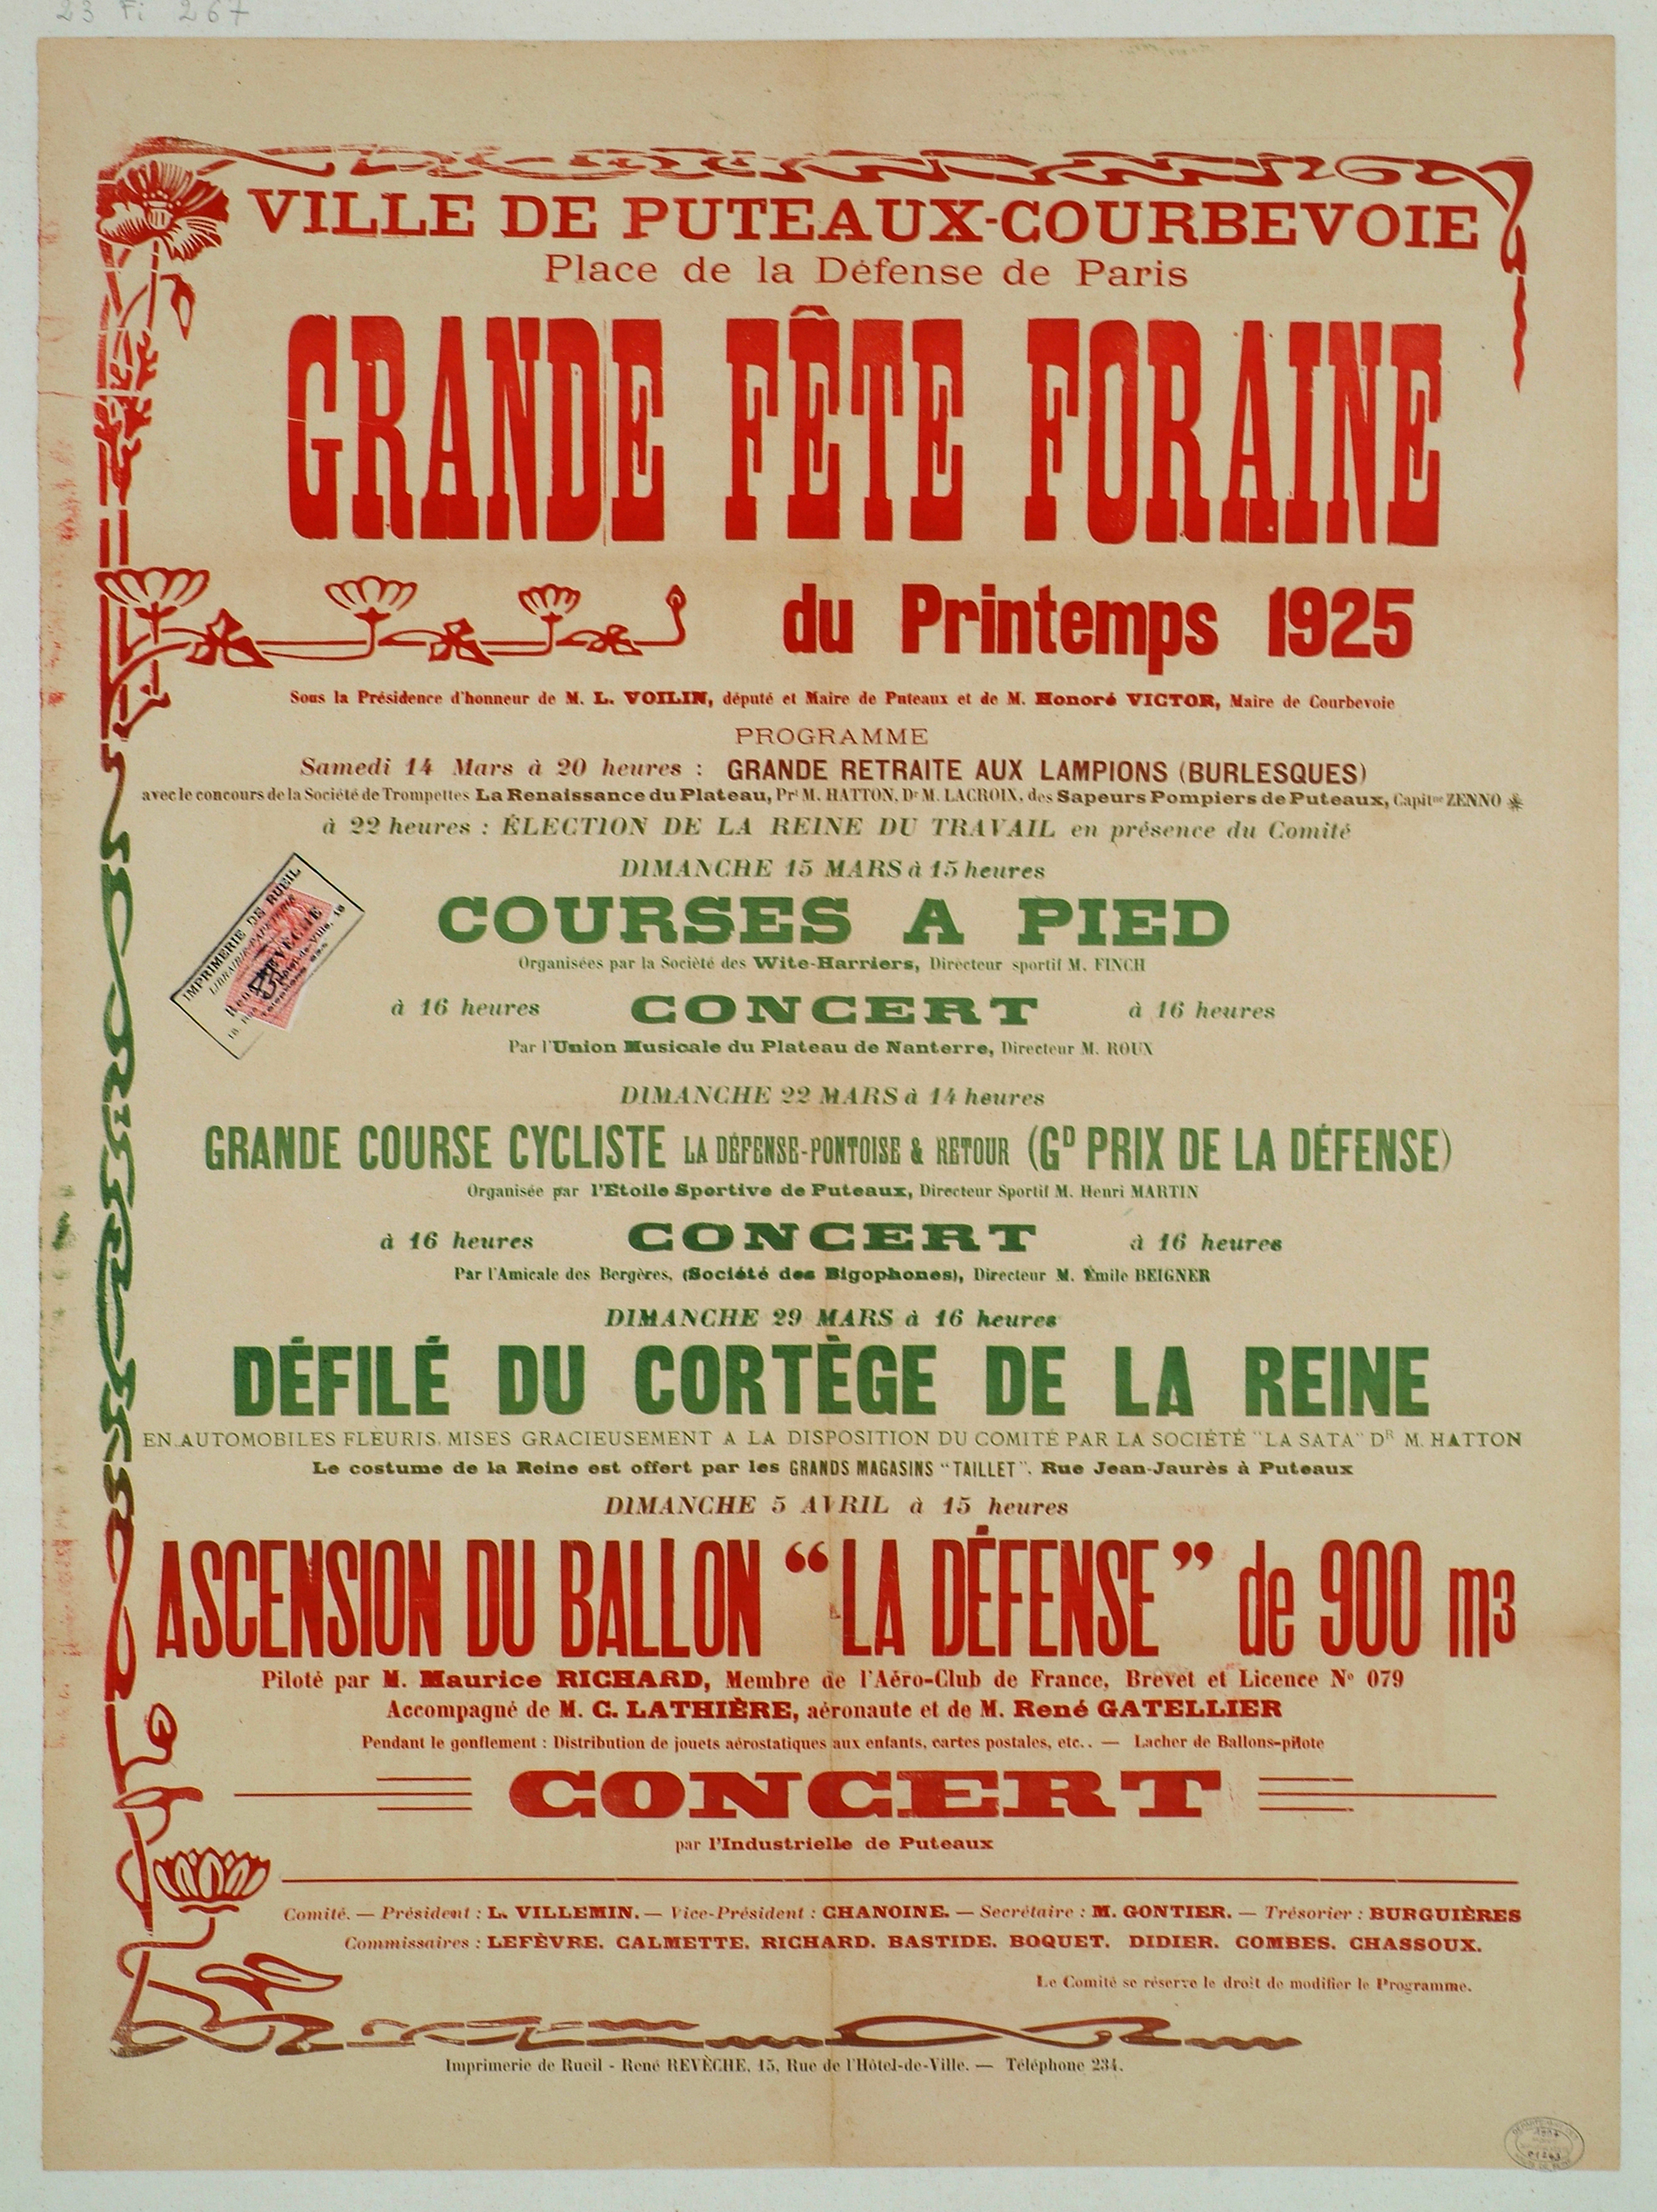 GRANDE FETE FORAINE DE PRINTEMPS 1925. PLACE DE LA DEFENSE (PUTEAUX-COURBEVOIE)